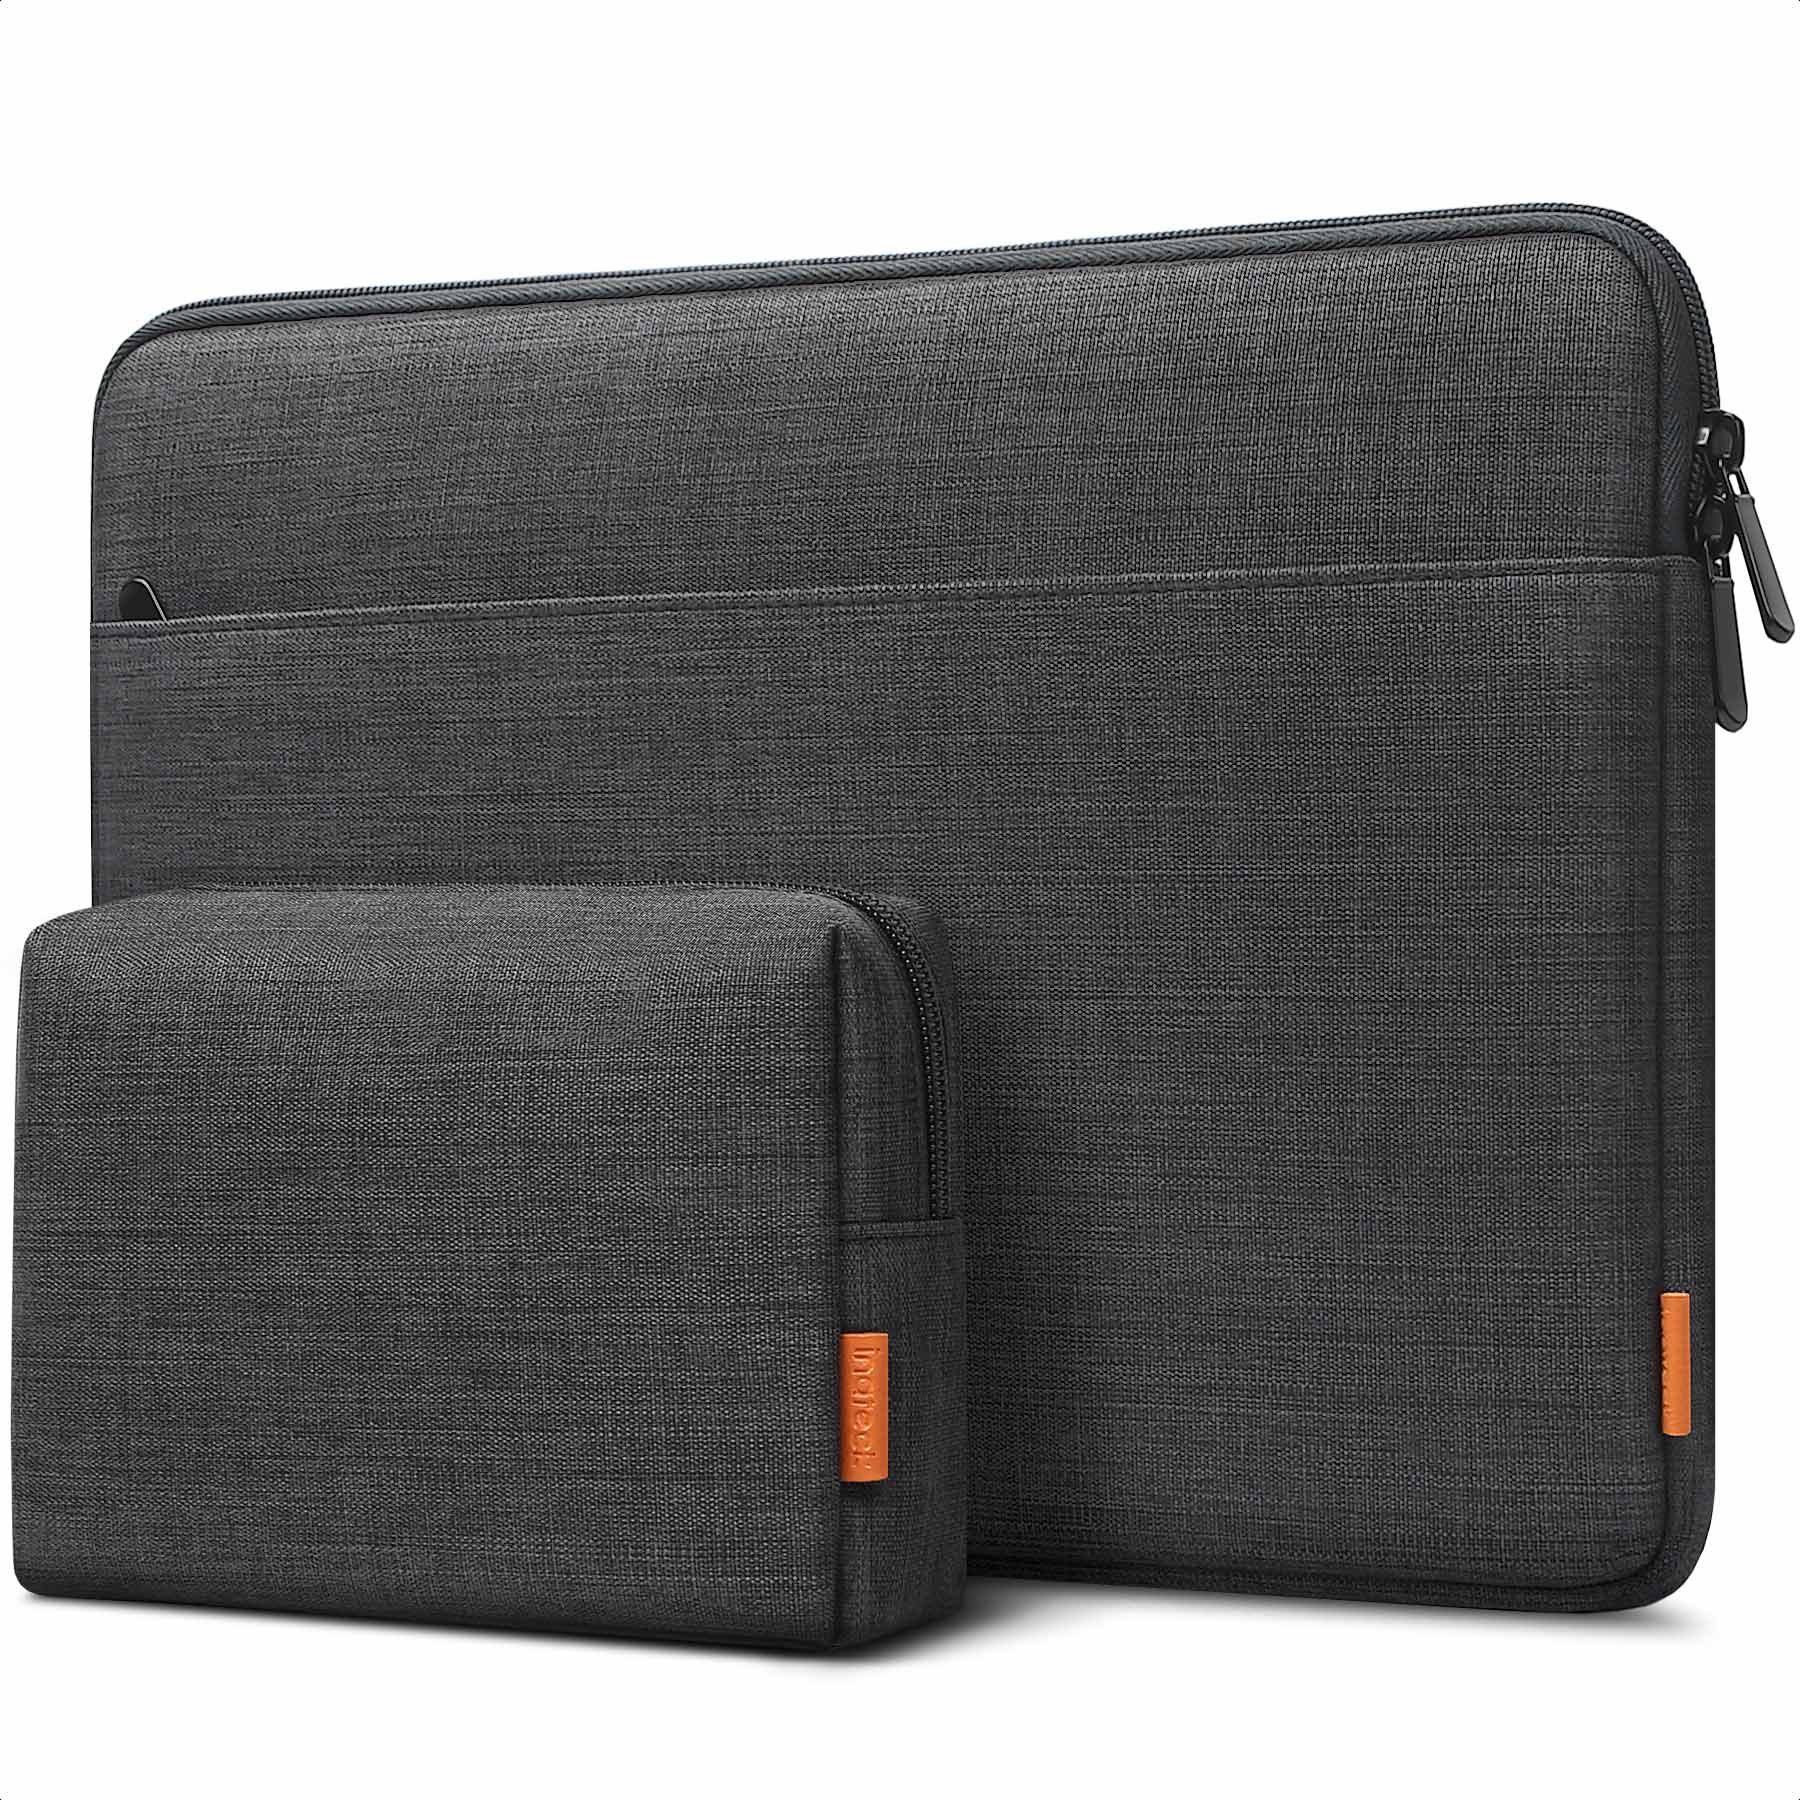 Neopren Softcase für Laptop Notebook Schutzhülle Laptoptasche 15Zoll Hülle Case 